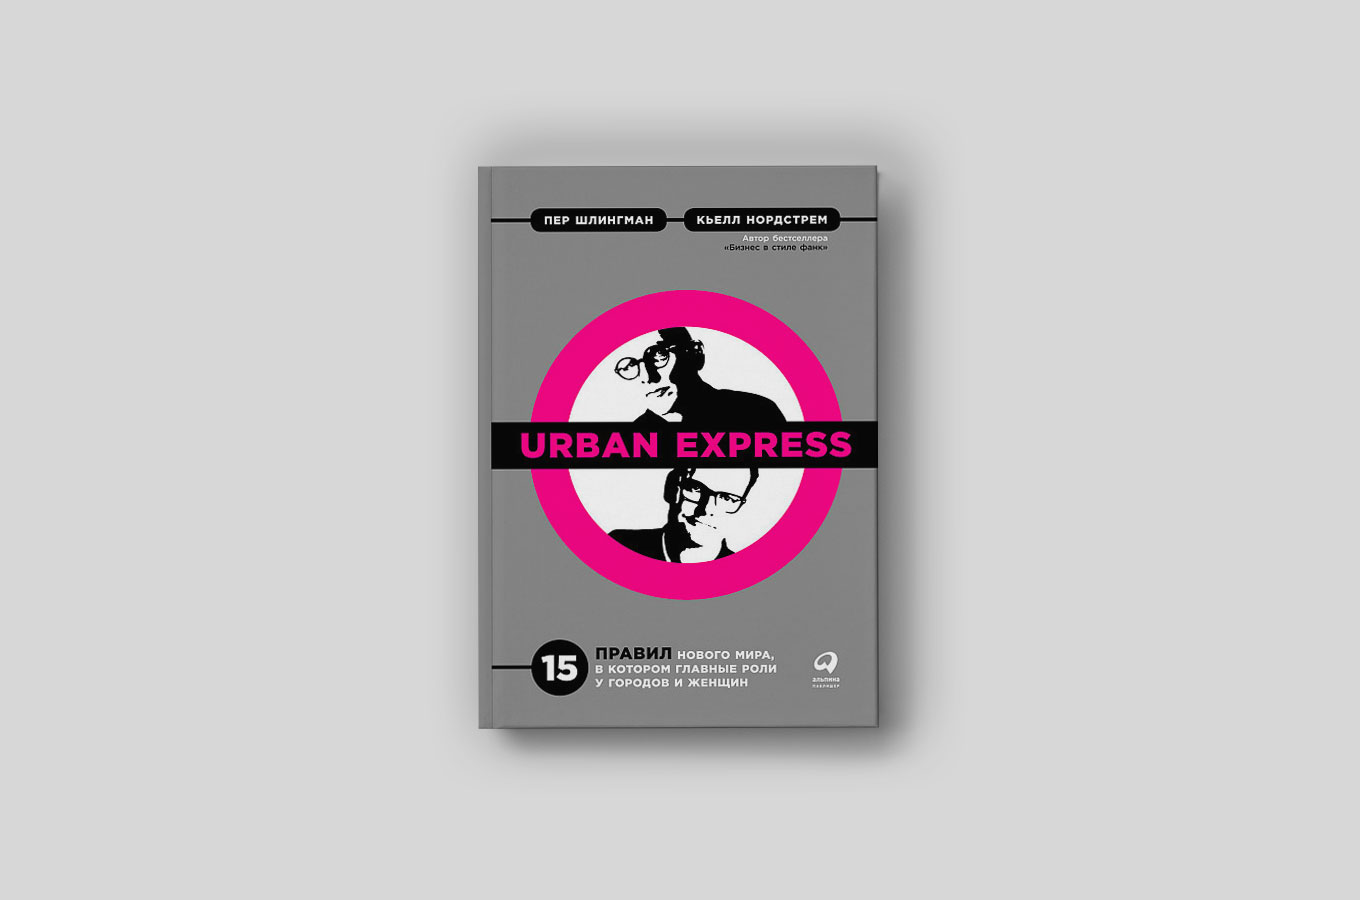 Urban Express: как «экспресс урбанизации» и феминизм меняют мир и бизнес